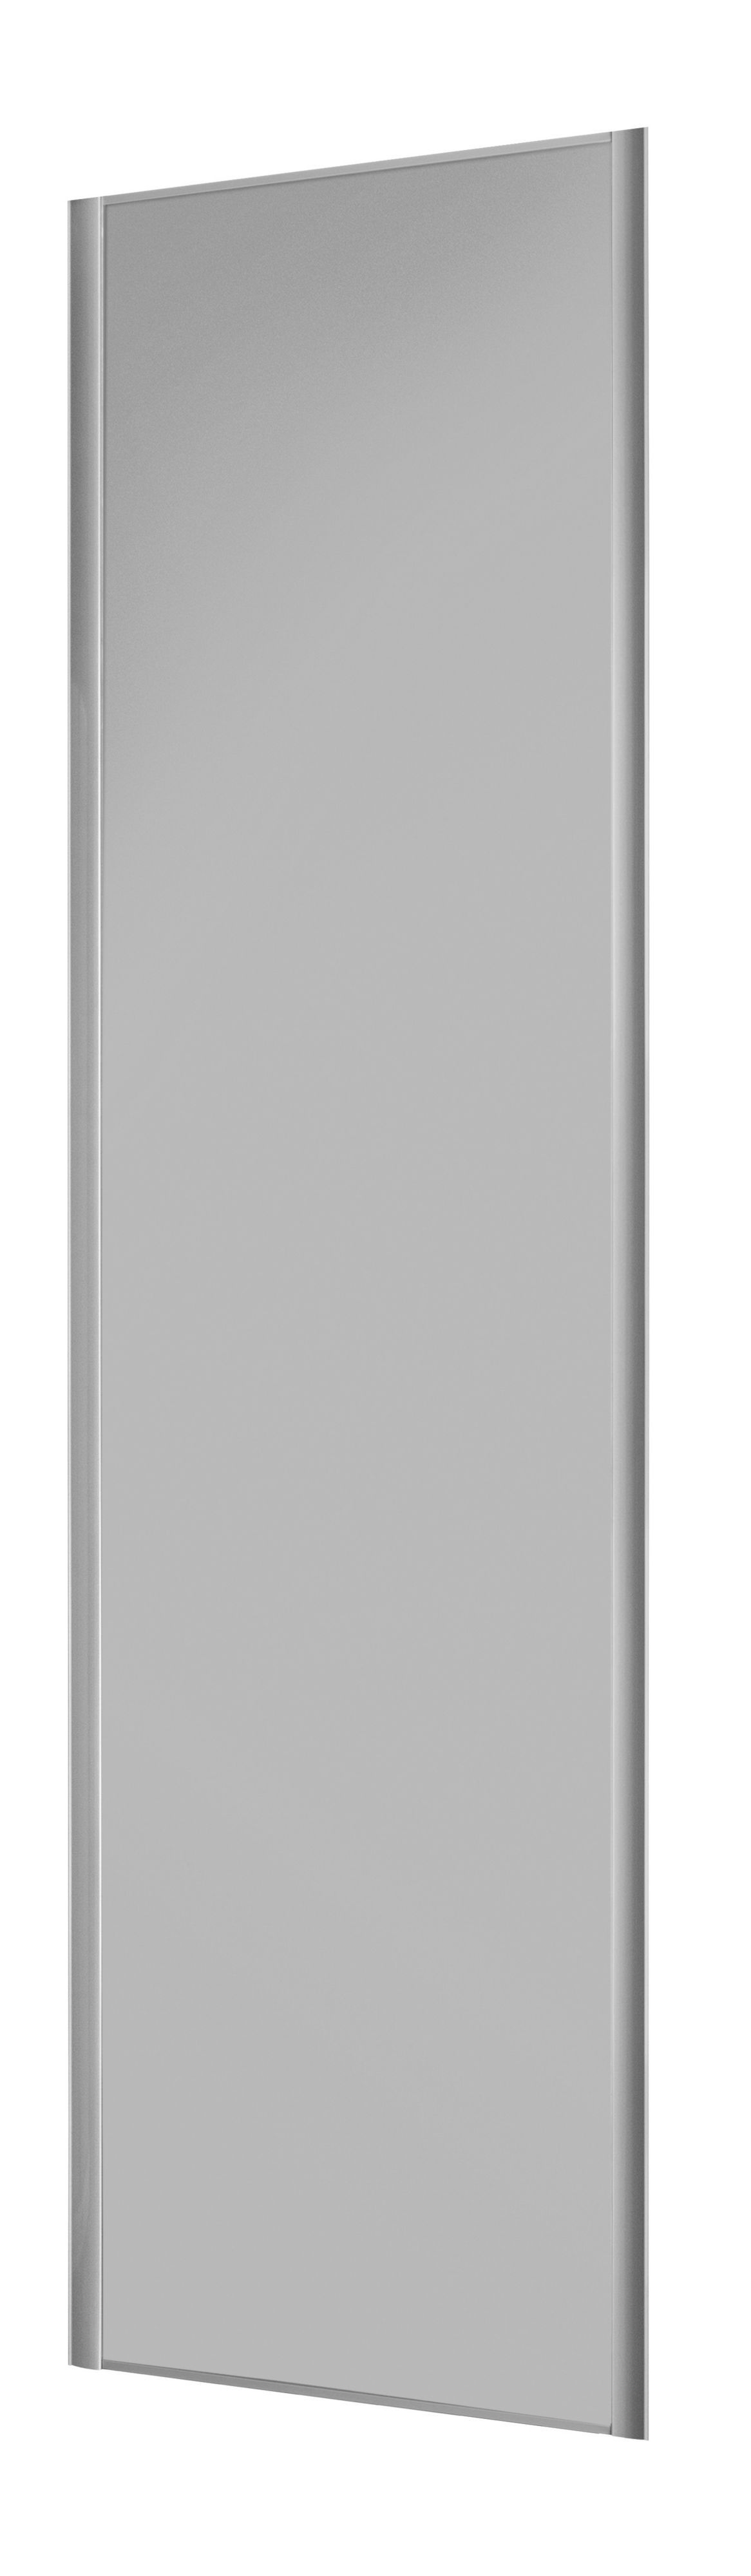 Form Valla Light grey Sliding wardrobe door (H) 2260mm x (W) 922mm